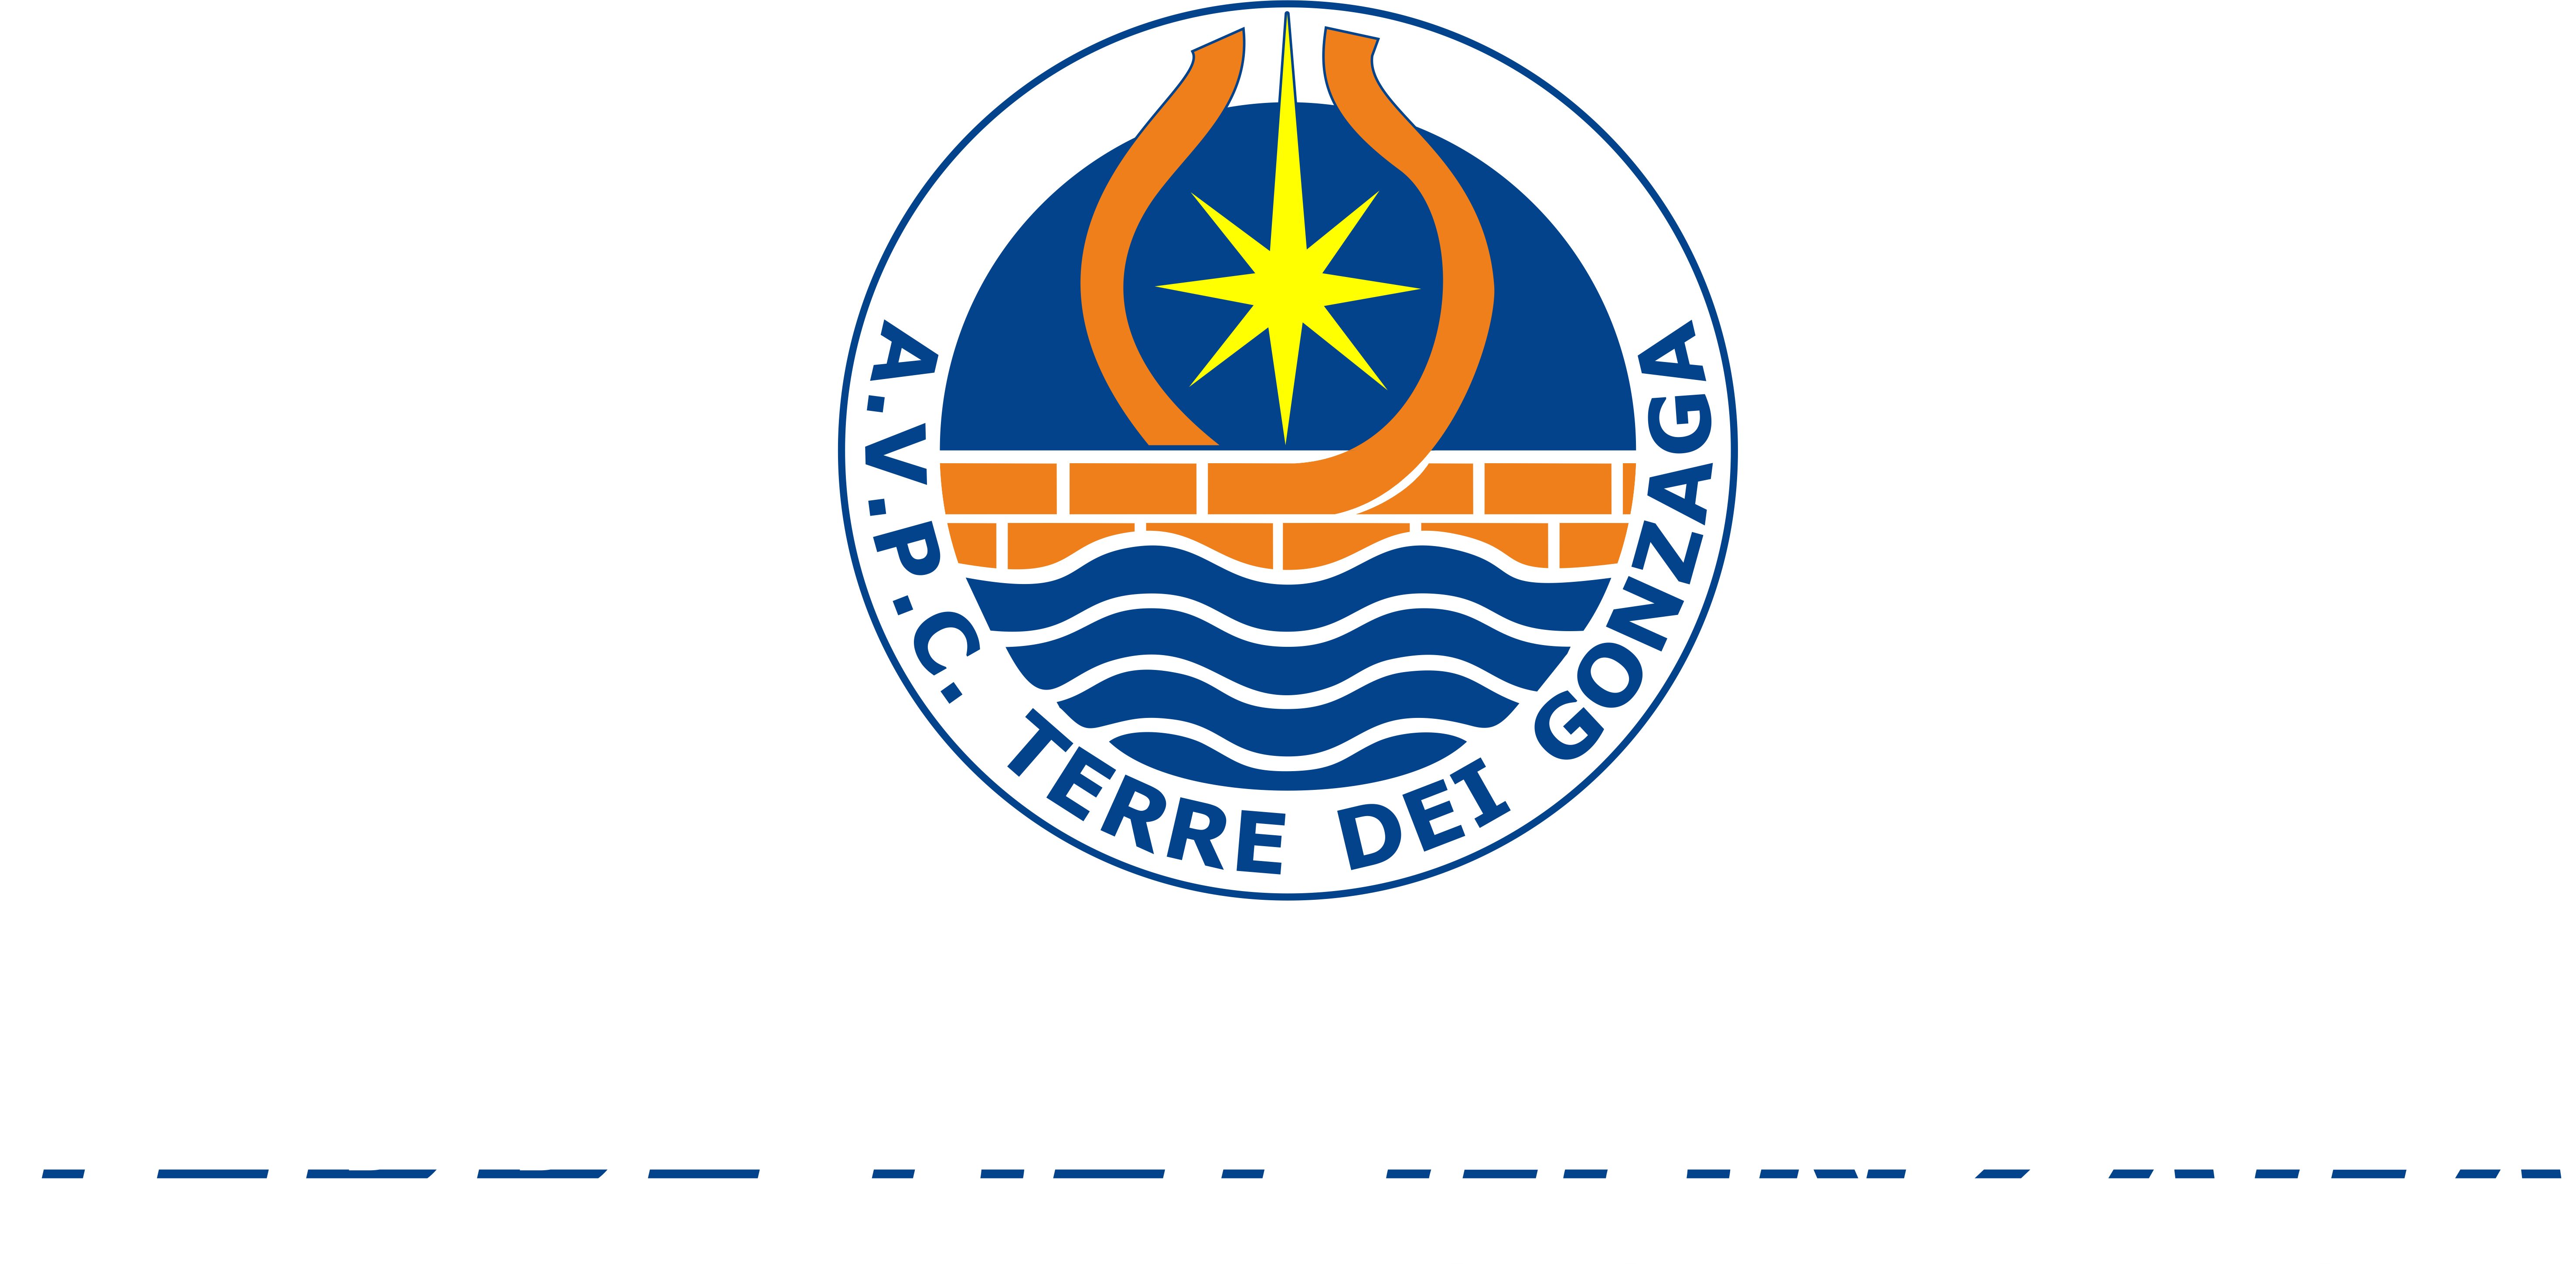 Protezione Civile "Terre dei Gonzaga"